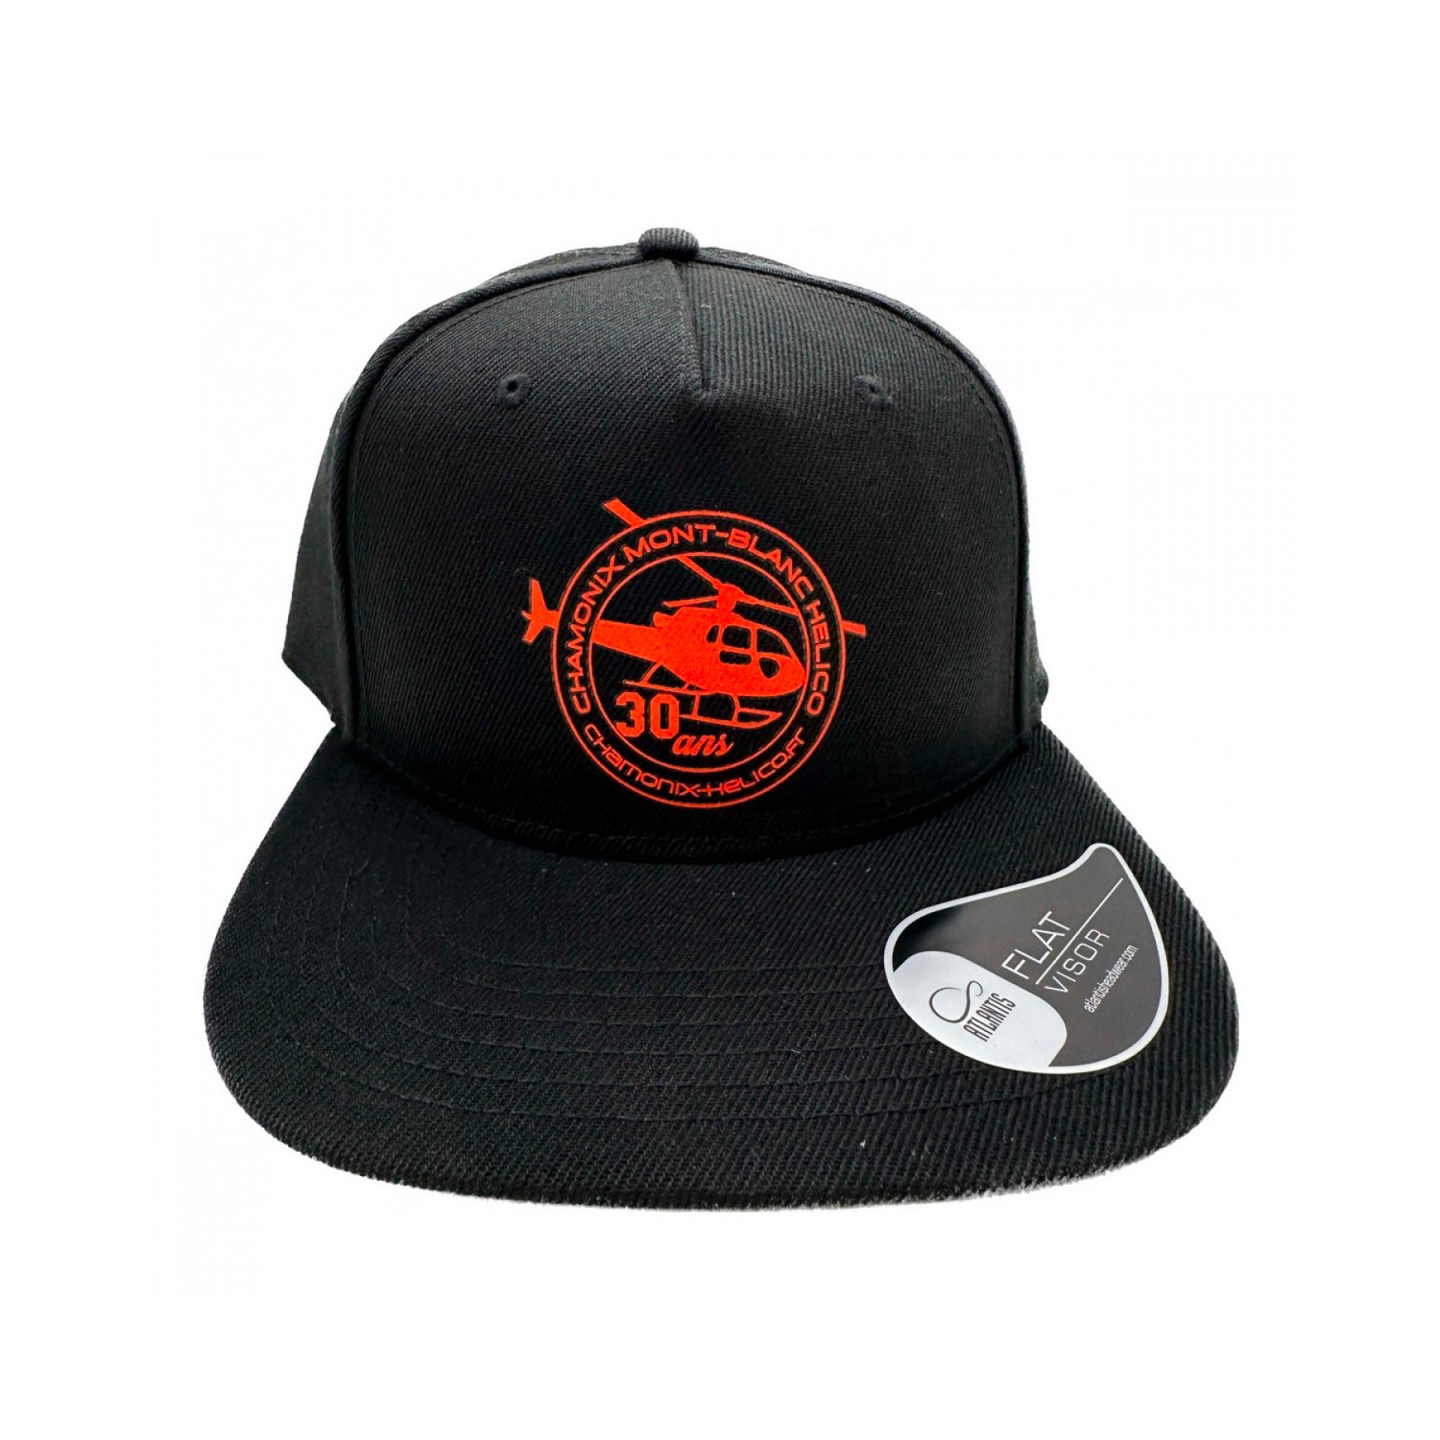 Snapback cap - Black